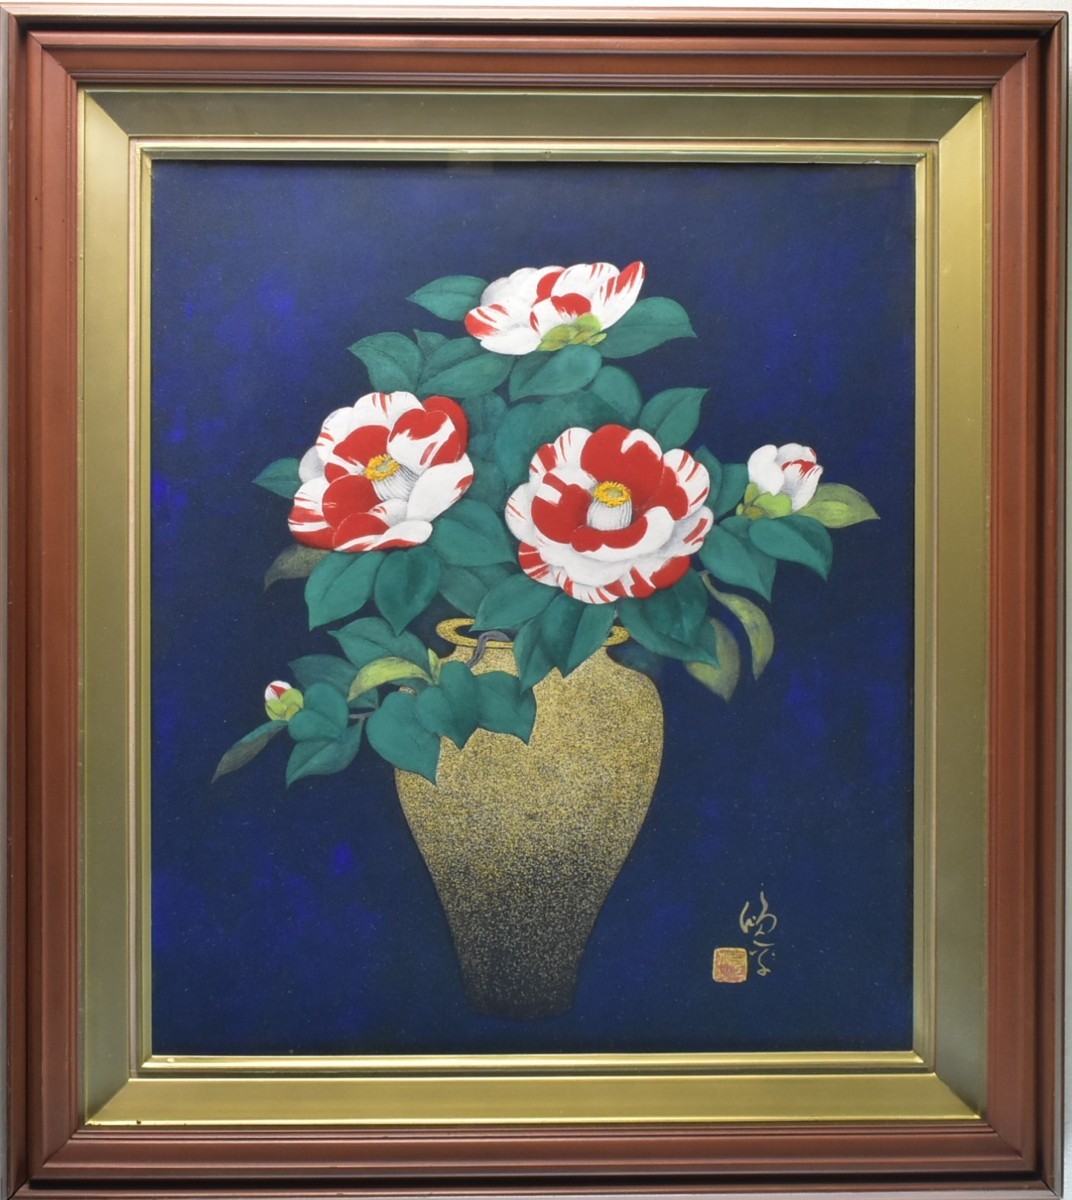 اكتشاف أعمال فنية يابانية! الفنان غير معروف رقم 10 معرض كوتوبوكي تسوباكي ماساميتسو, تلوين, اللوحة اليابانية, الزهور والطيور, الطيور والوحوش